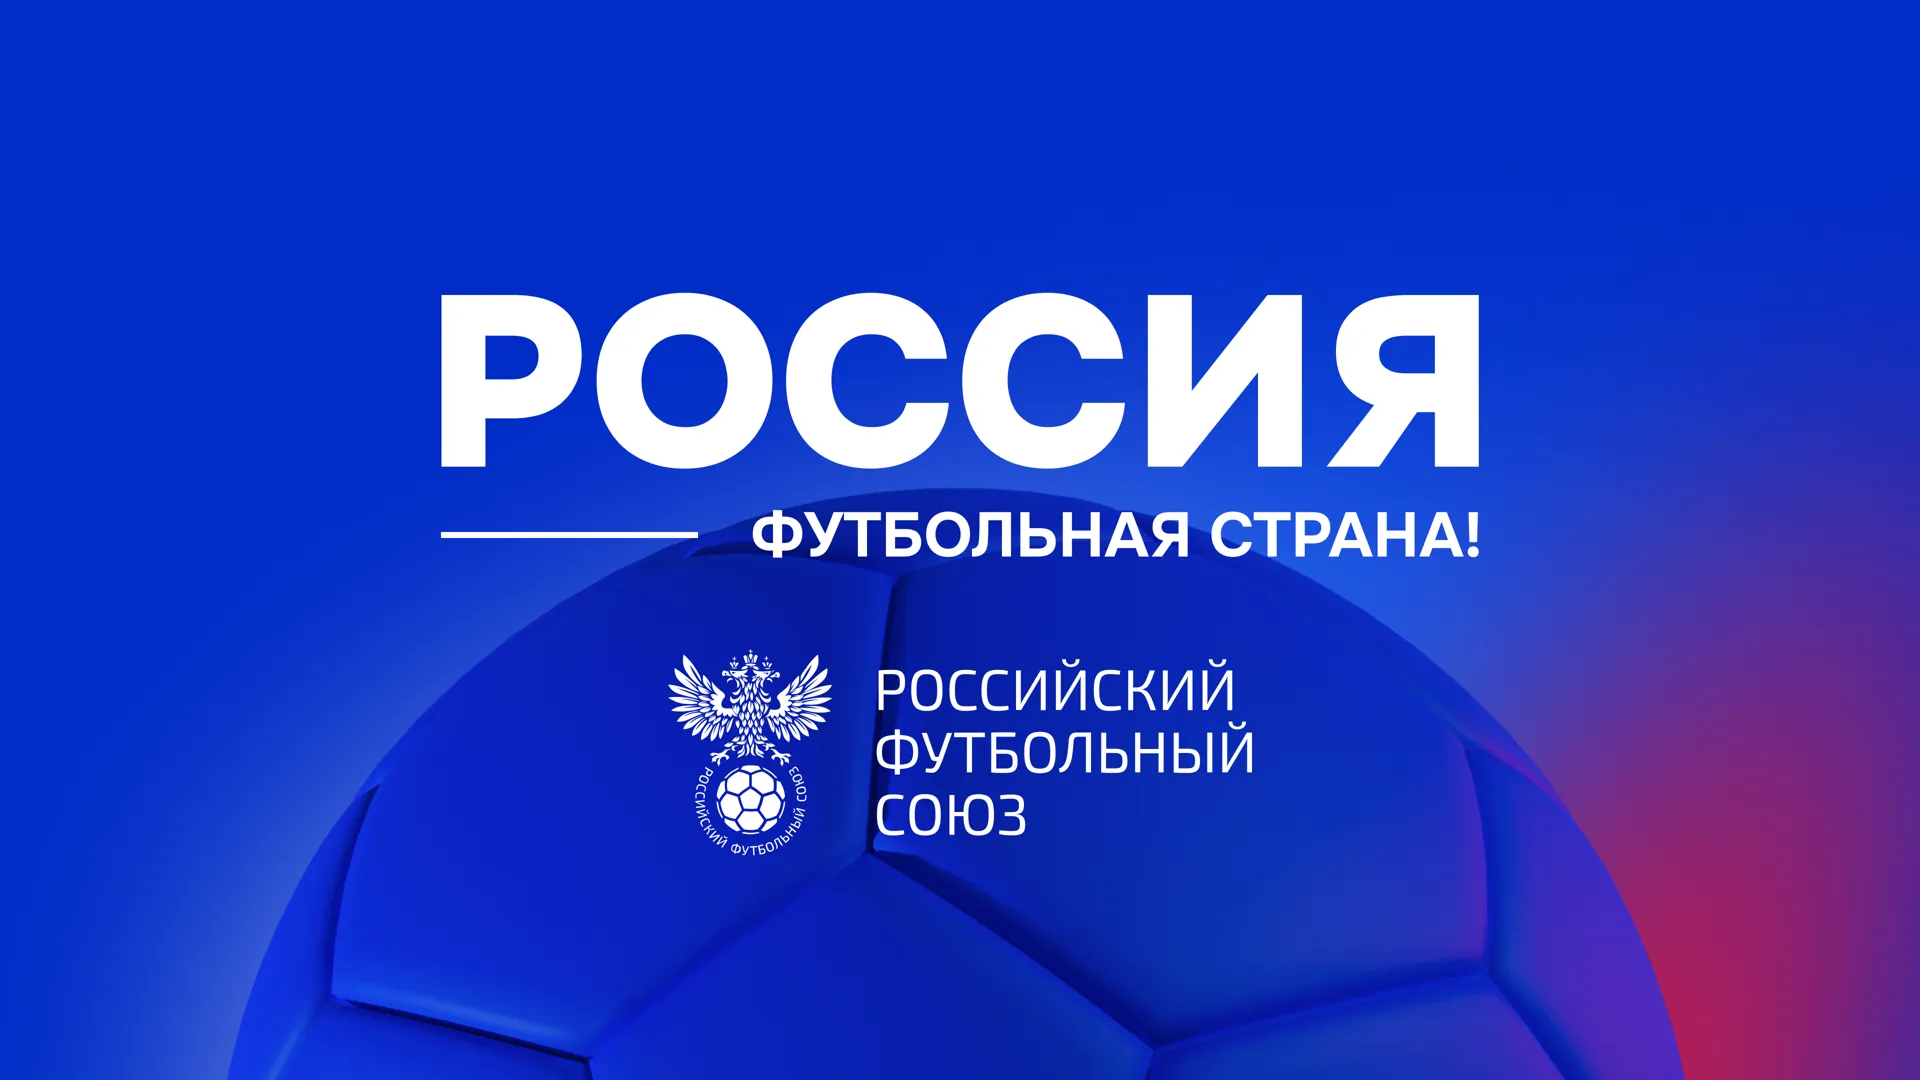 19 проектов Подмосковья преодолели региональный этап конкурса «Россия – футбольная страна»